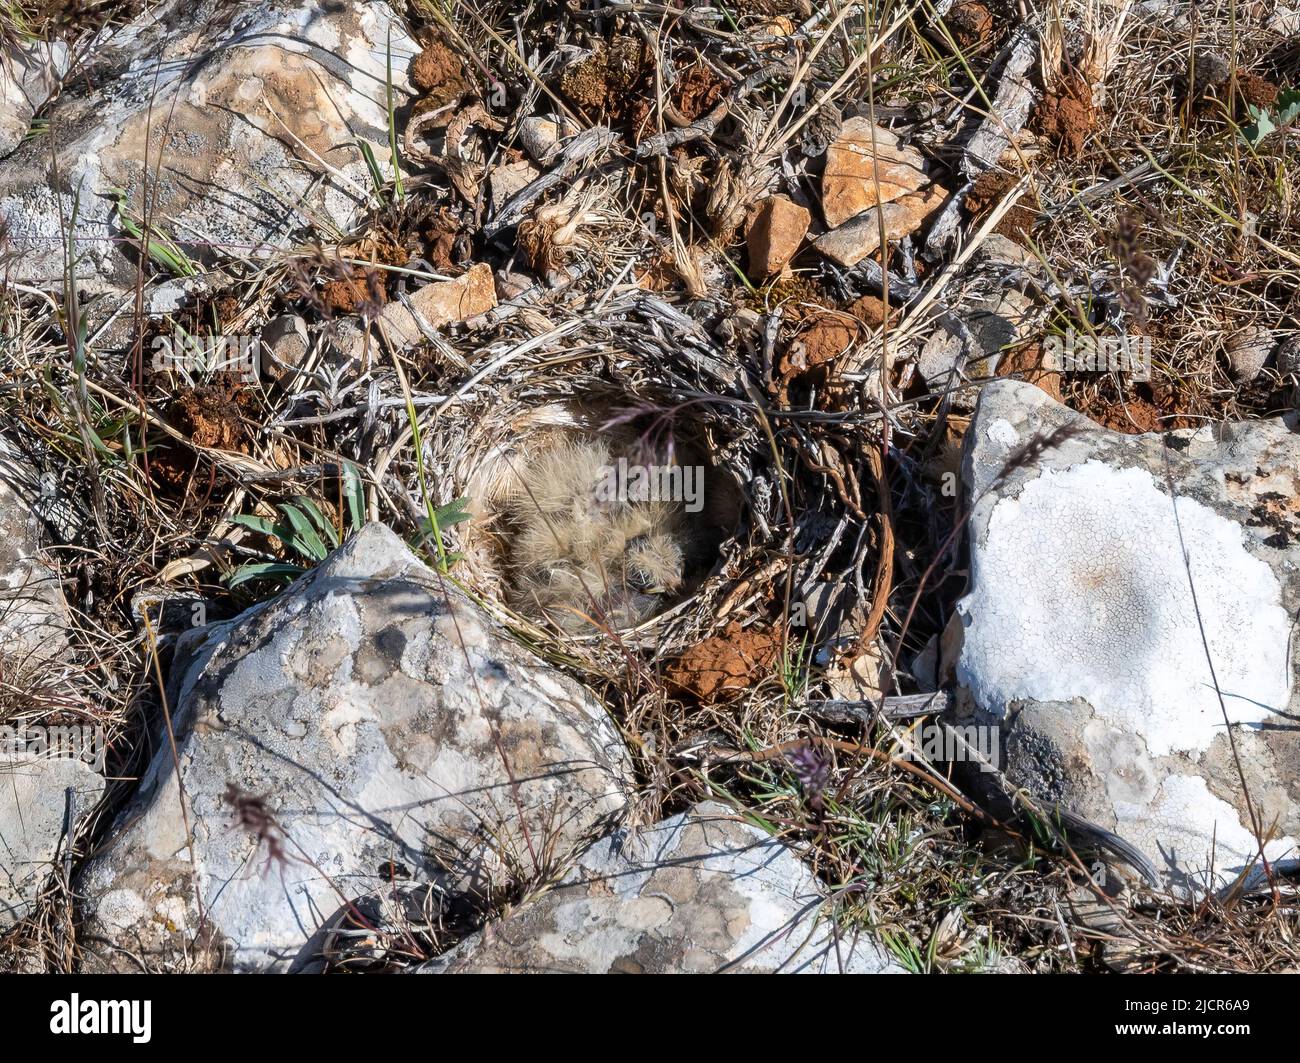 Un nido de pájaros con polluelos diminutos en el suelo rocoso. Gaziantep, Türkiye. Foto de stock